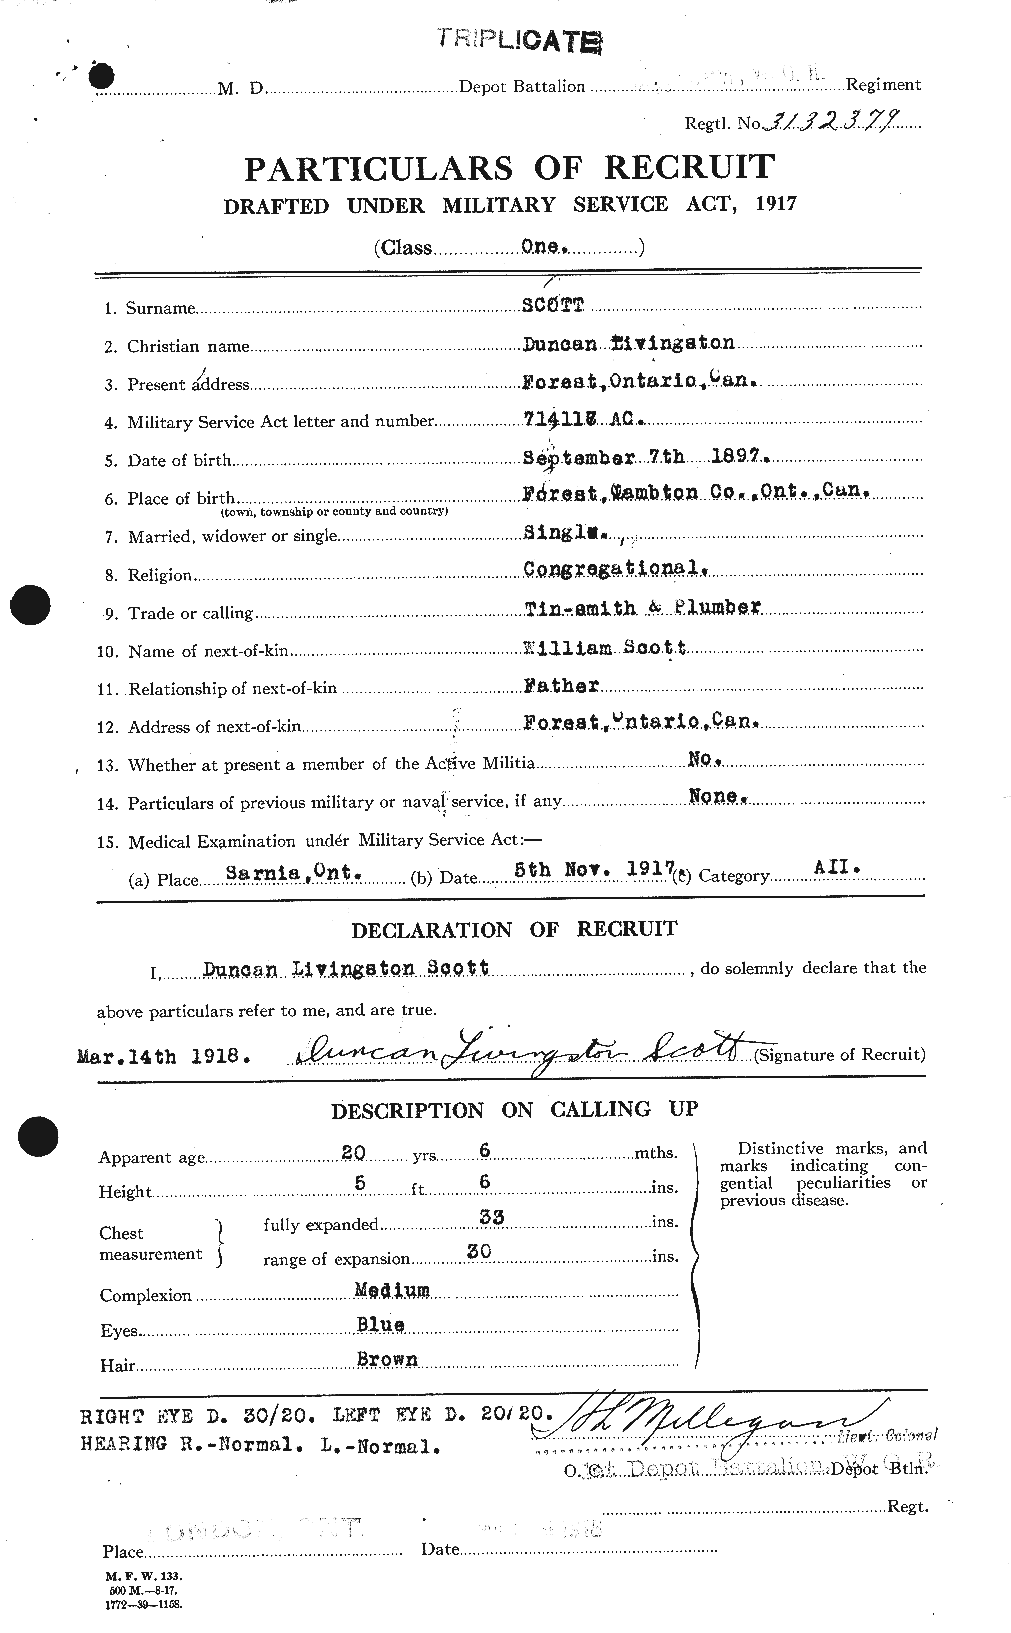 Dossiers du Personnel de la Première Guerre mondiale - CEC 085346a